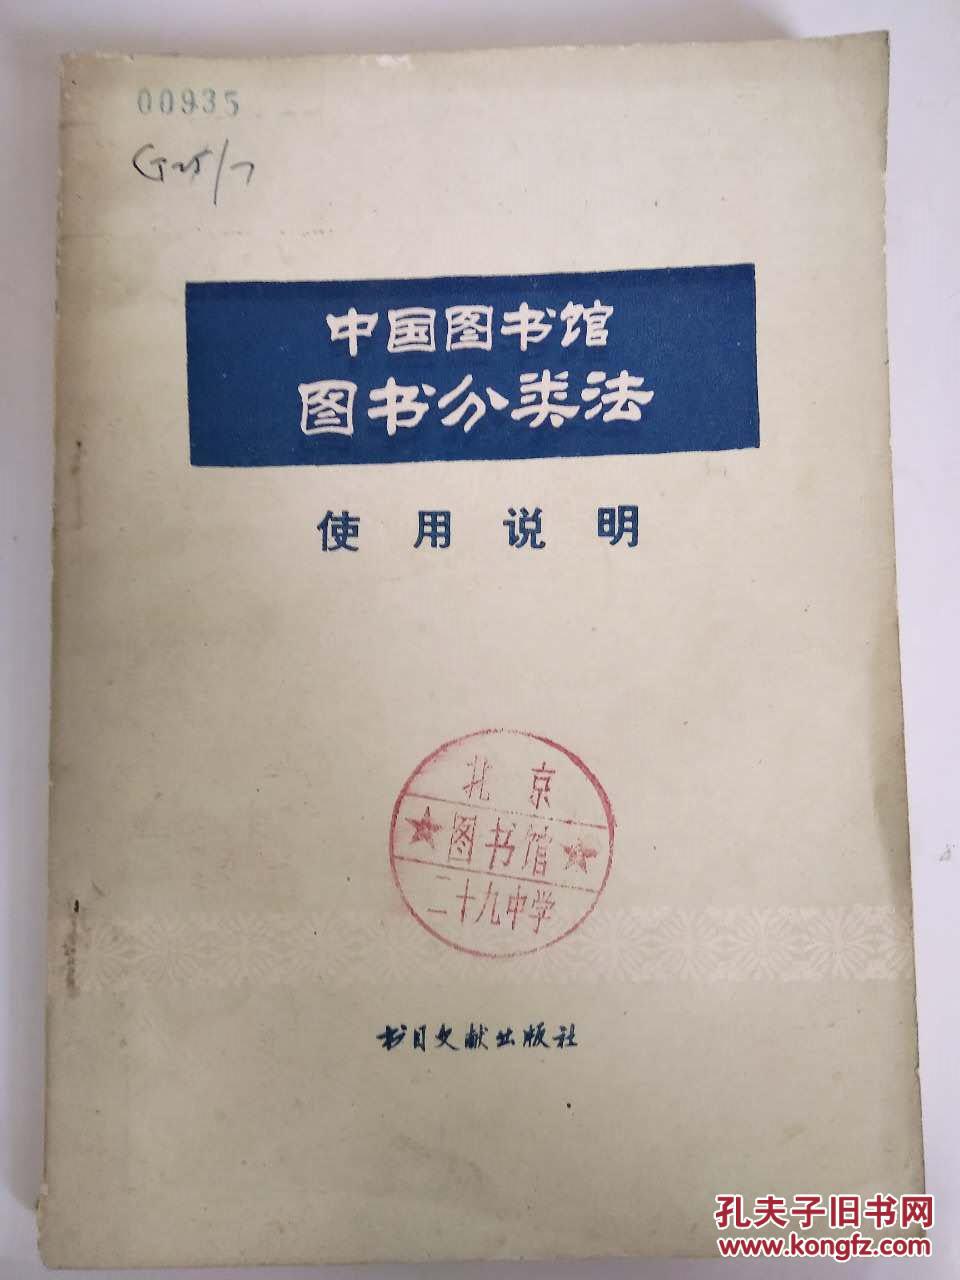 中国图书馆图书分类法--使用说明  馆藏书